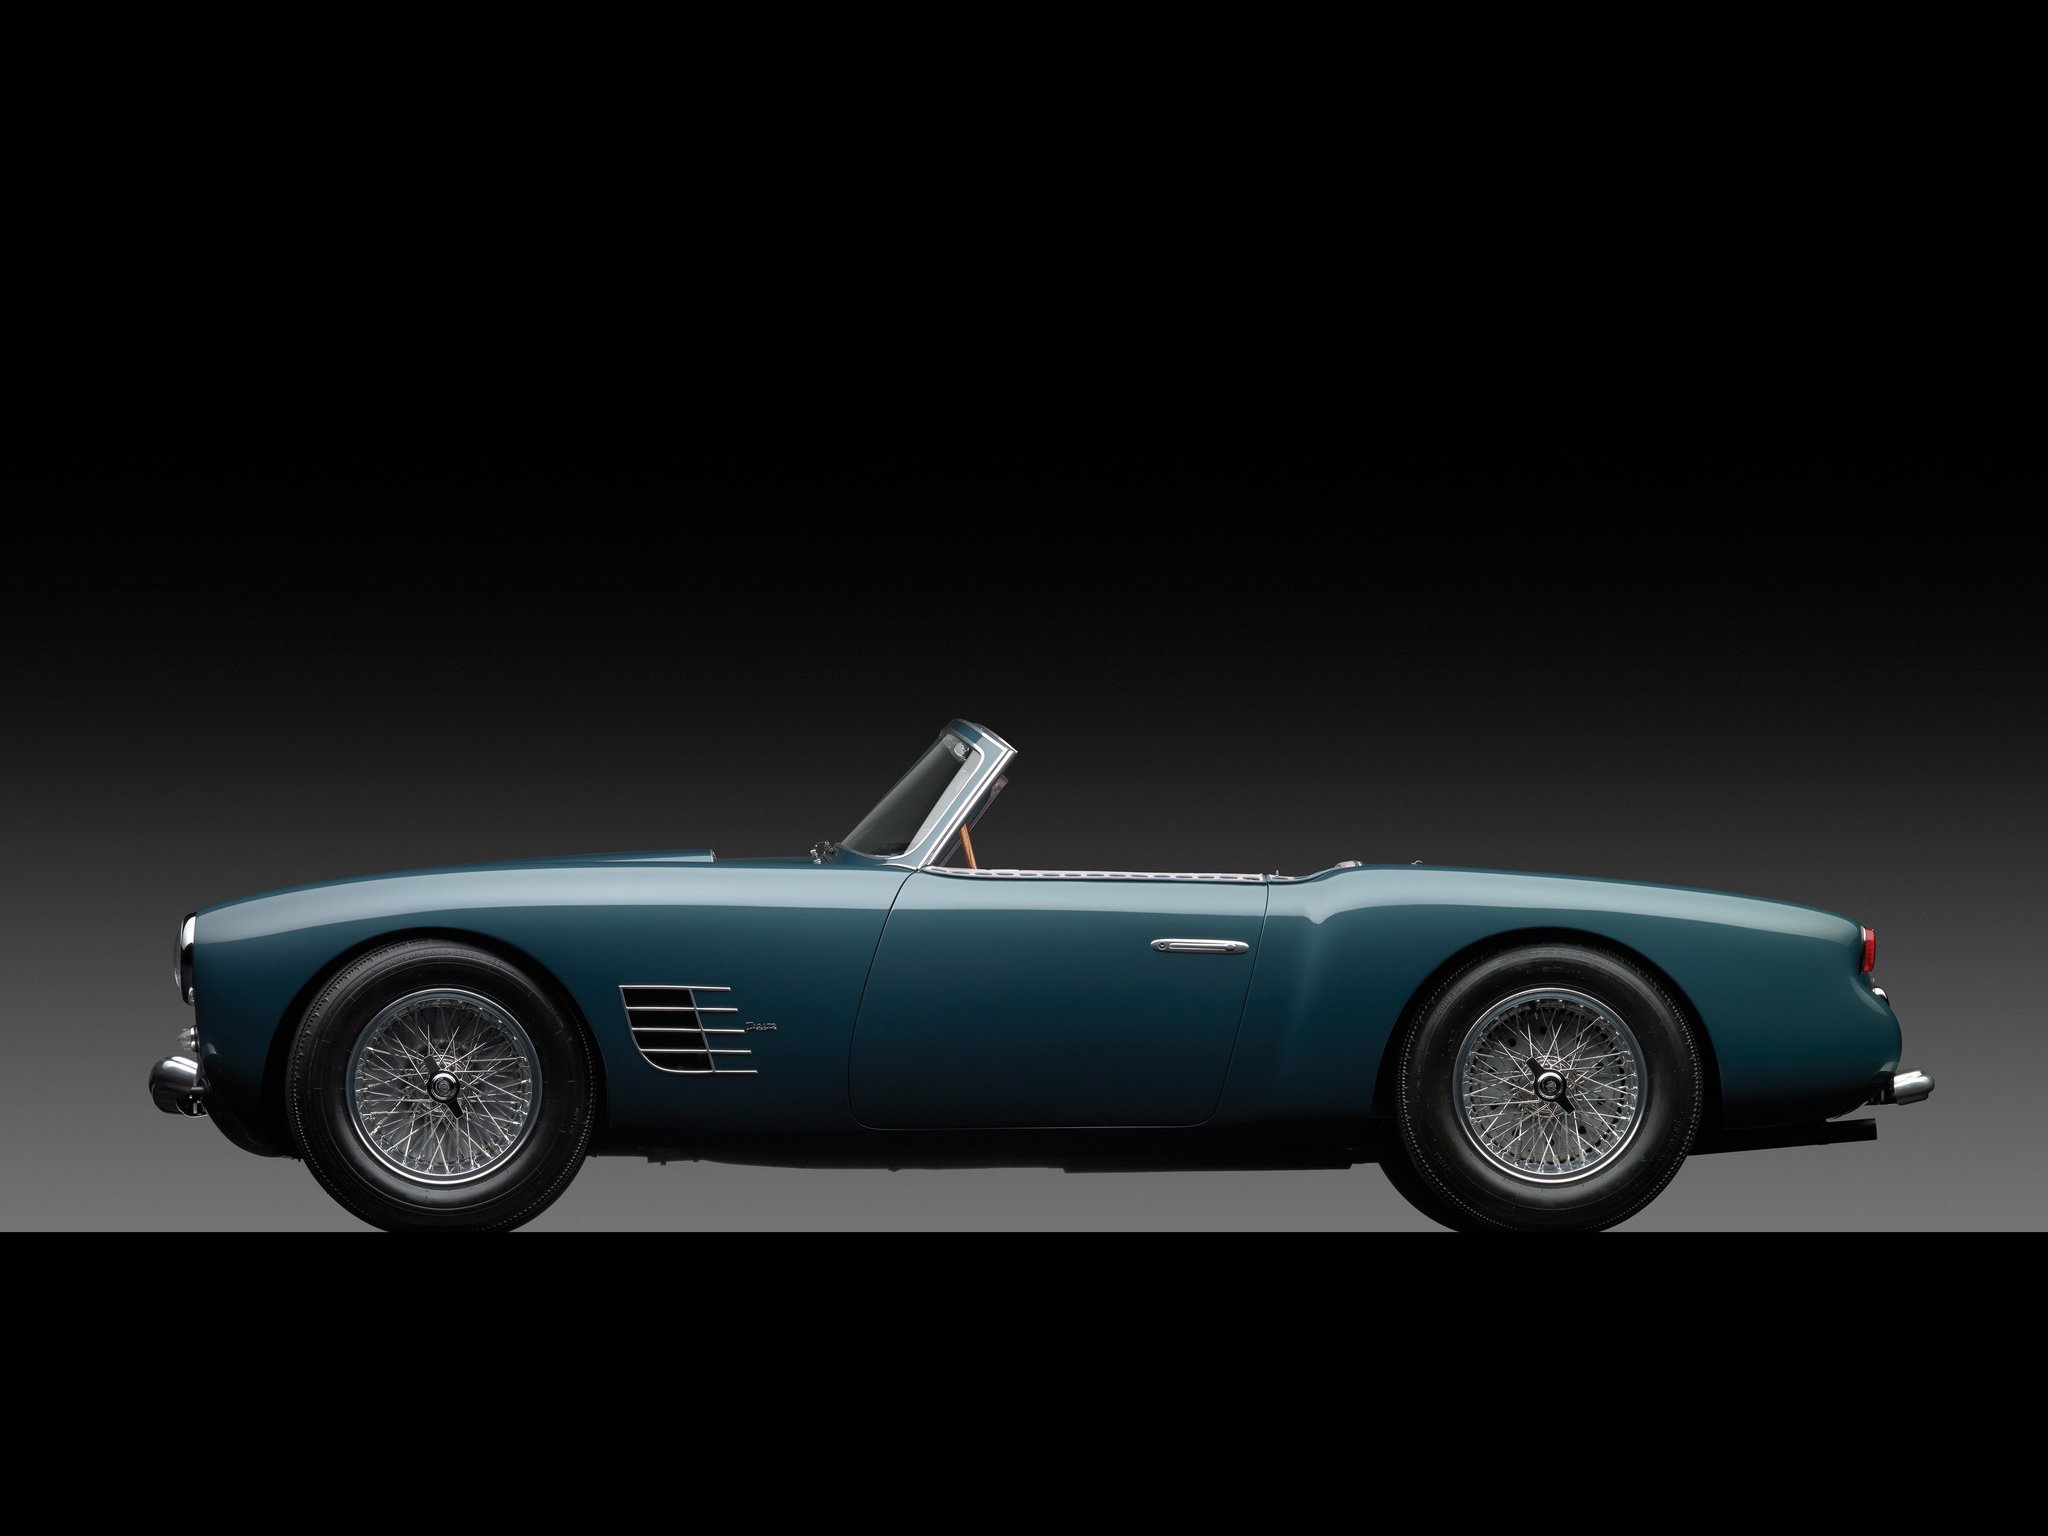 zagato, Maserati, A6g, 2000, Spider, Cars, 1954 Wallpaper